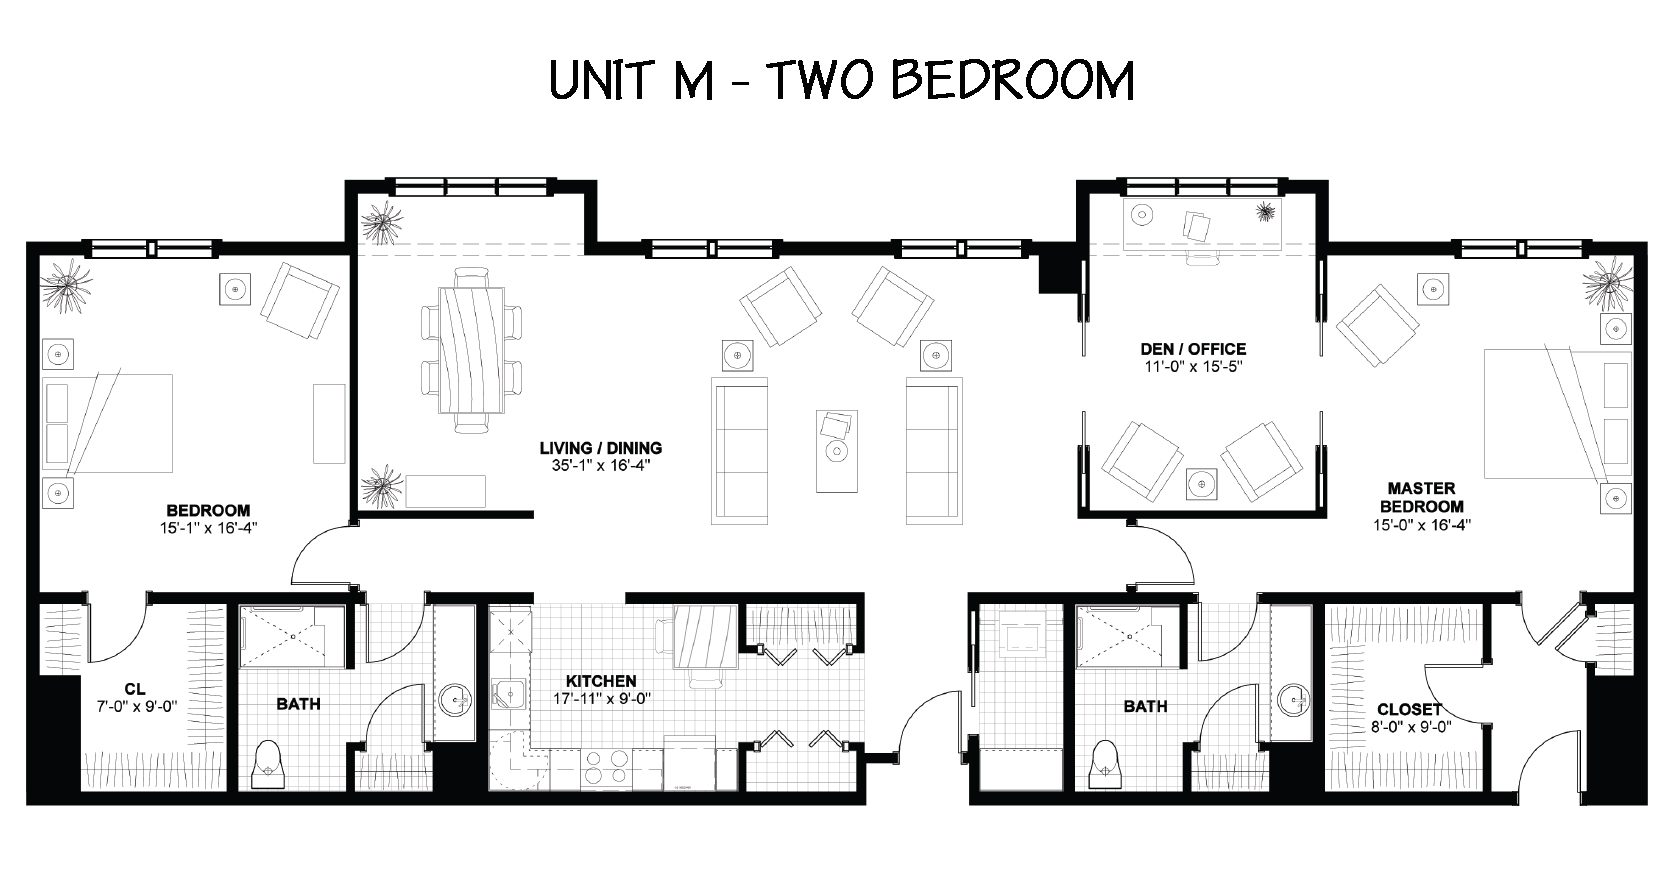 Floor Plan - The Woodlands - 2 Bedrooms - Unit M